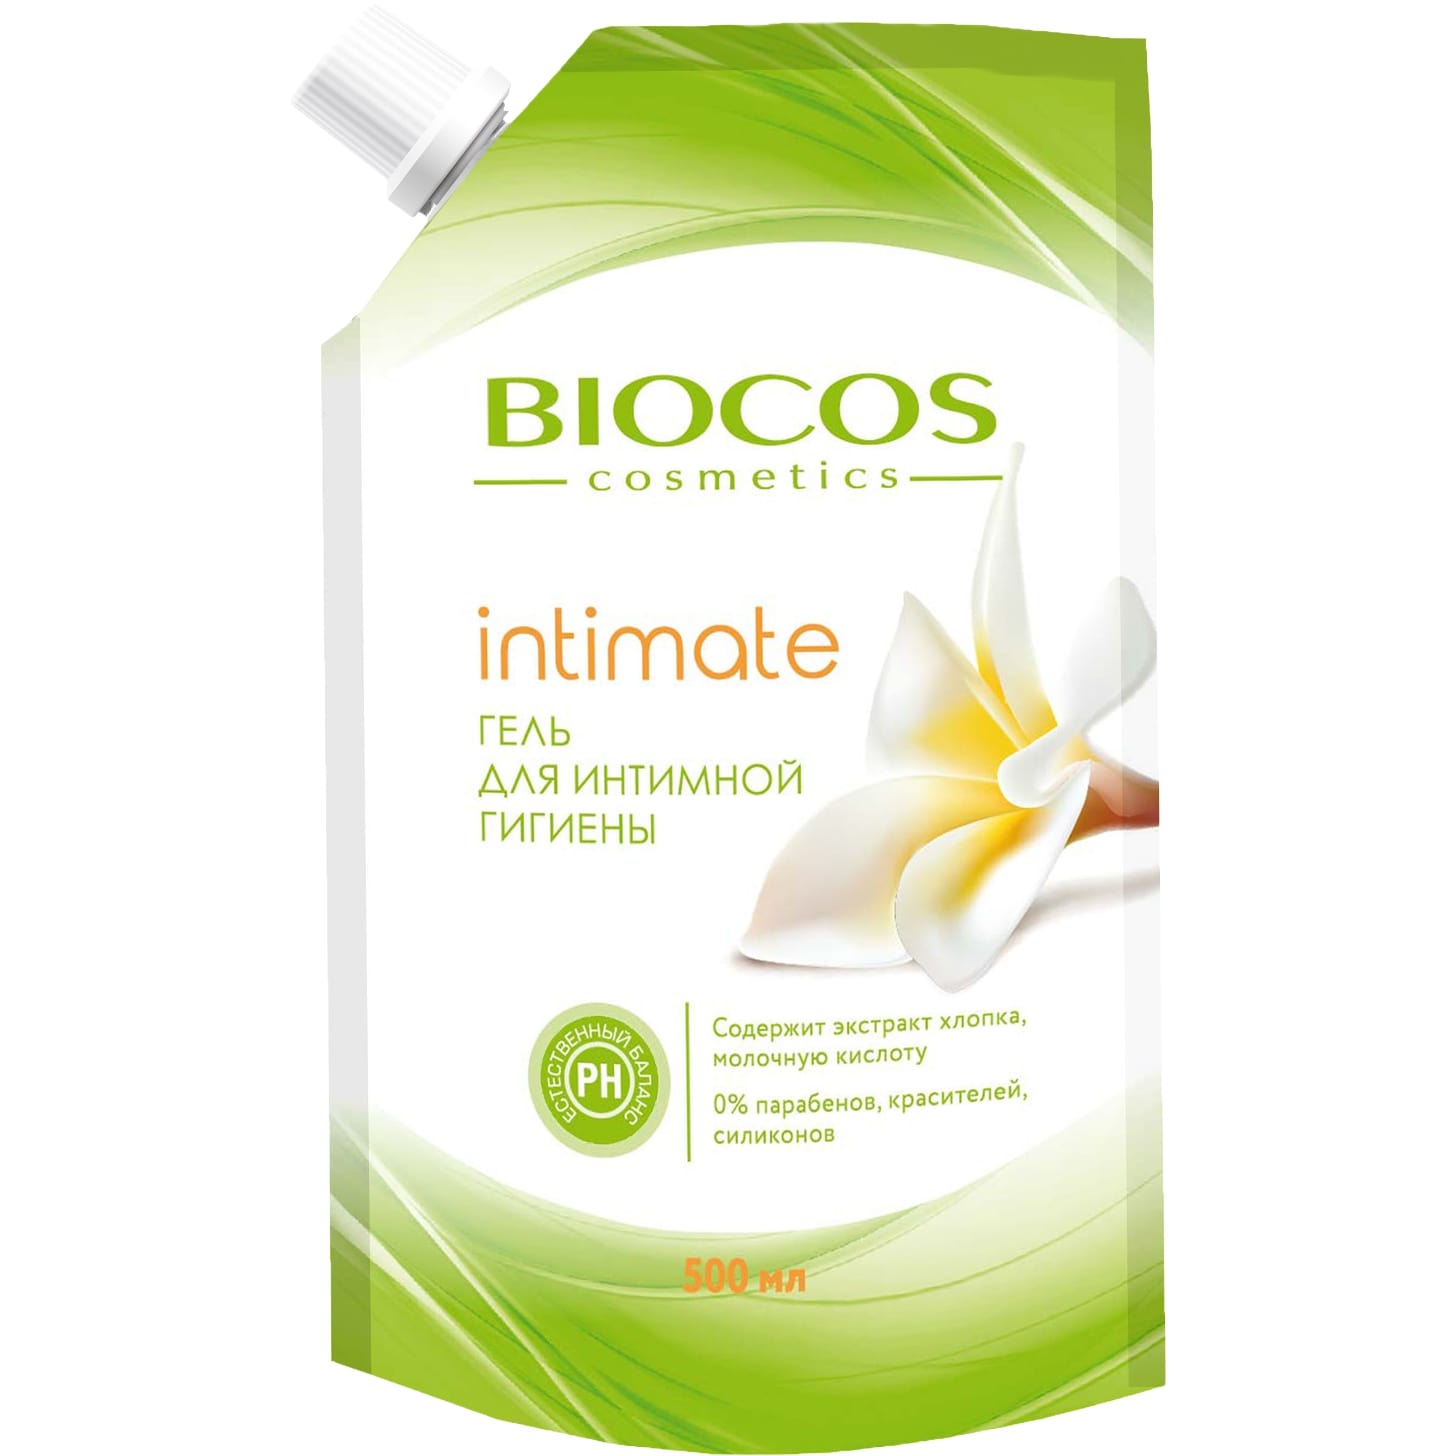 Гель для интимной гигиены BioCos intimate с экстрактом хлопка и молочной кислотой 500 мл